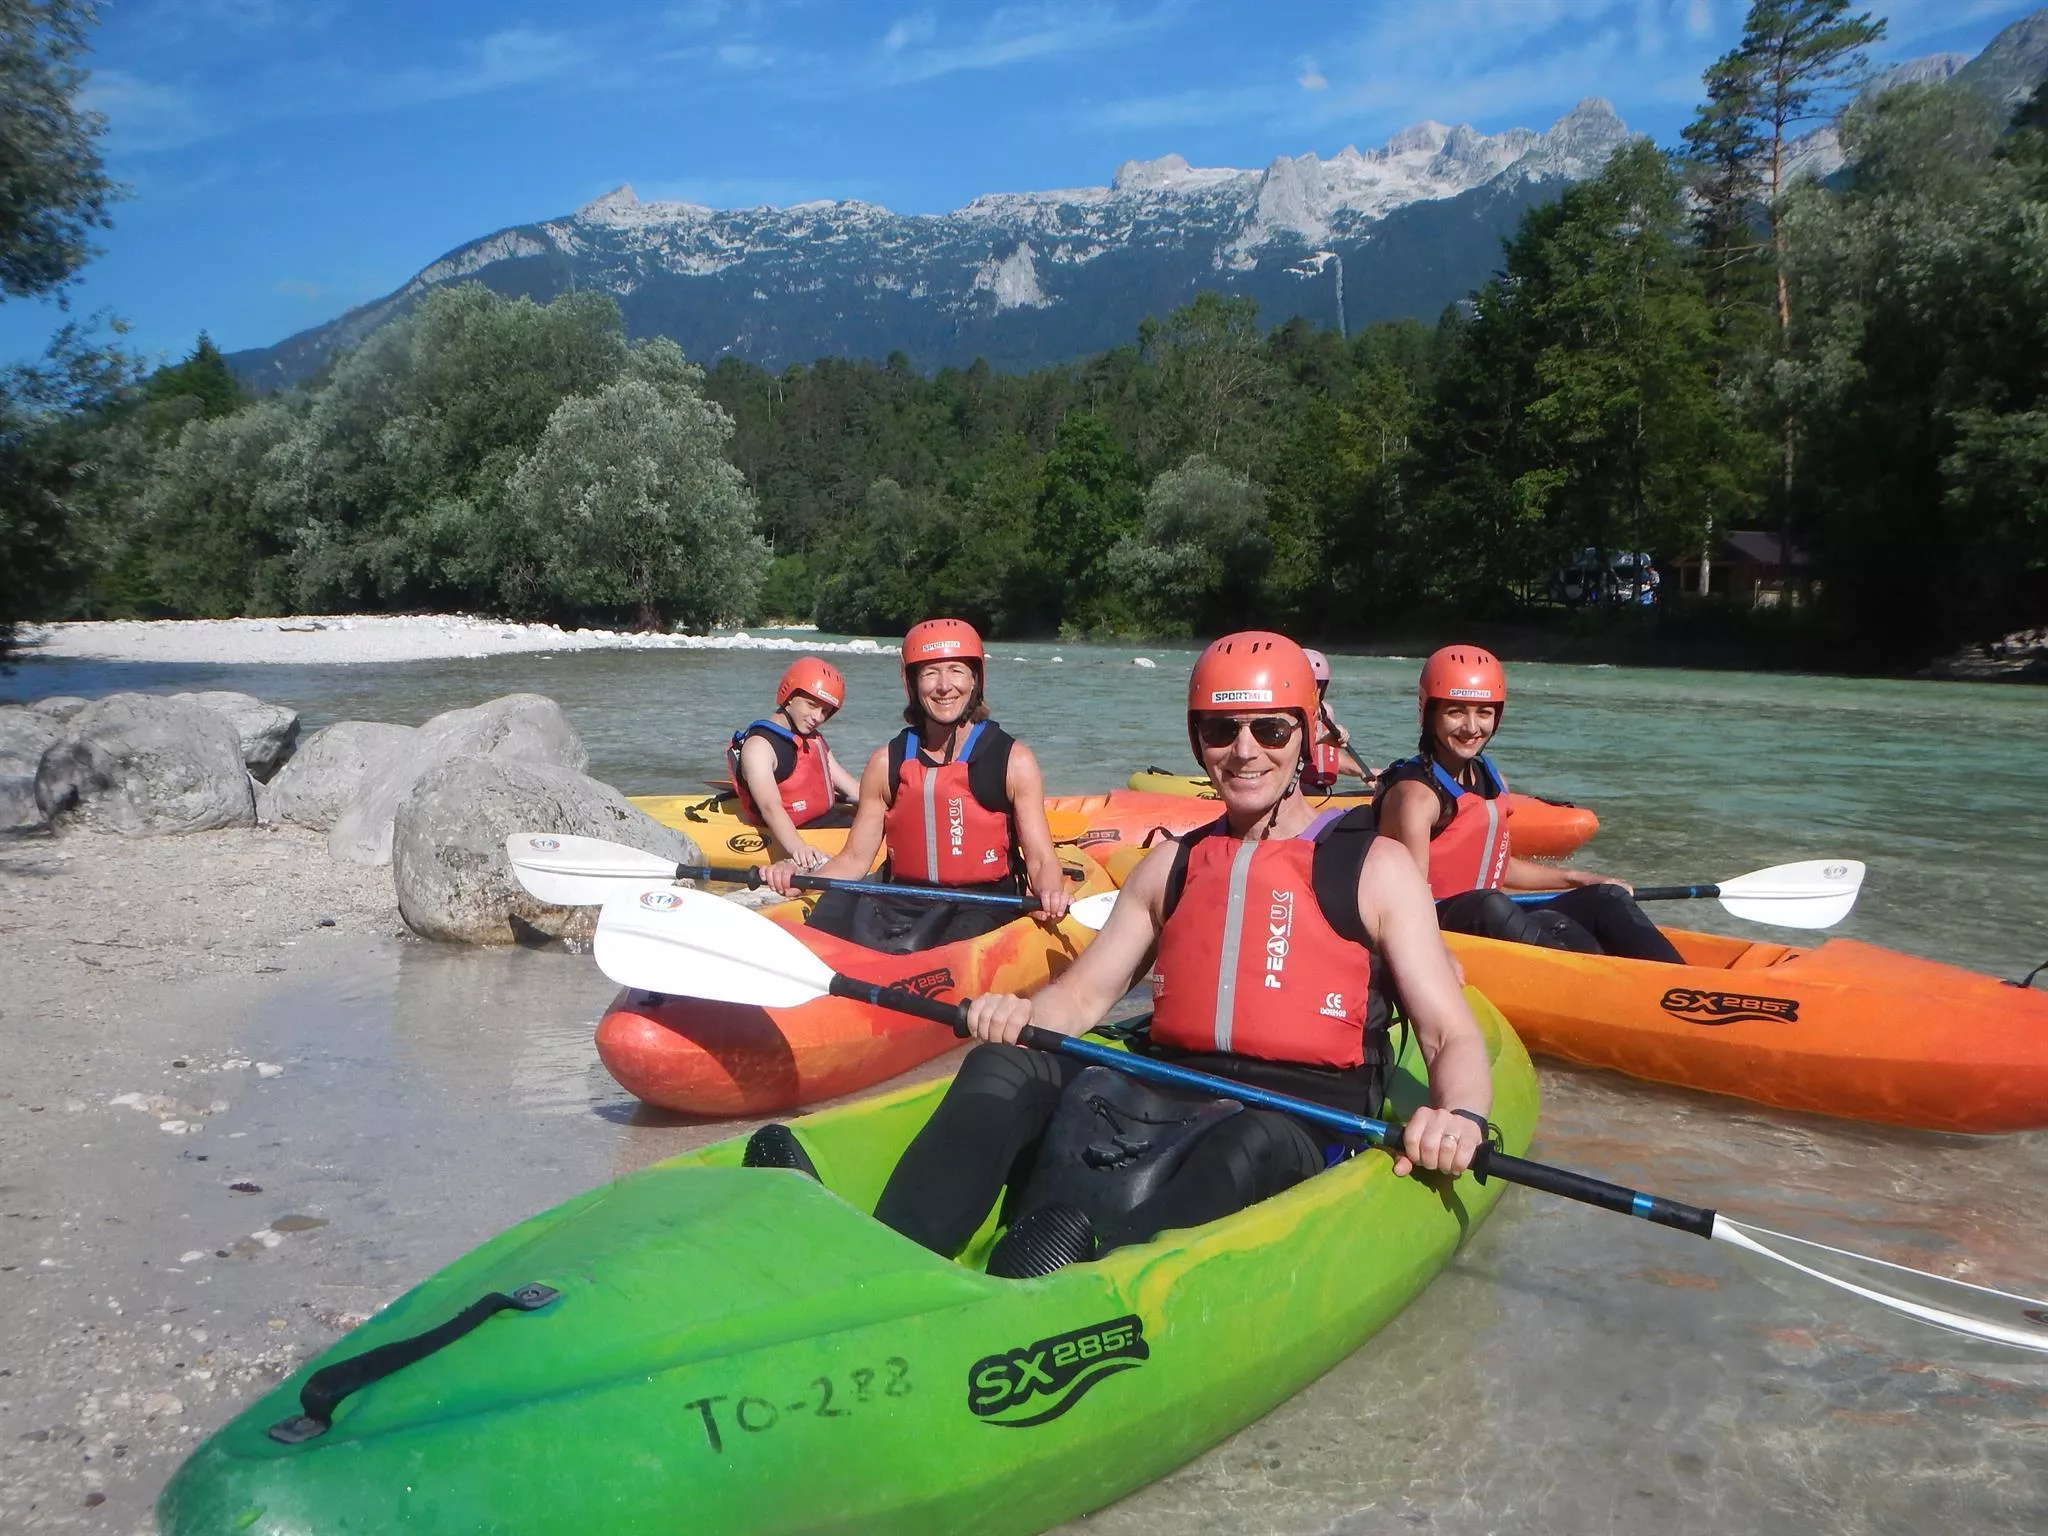 Kayak School Arlberg in Austria, Europe | Kayaking & Canoeing - Rated 1